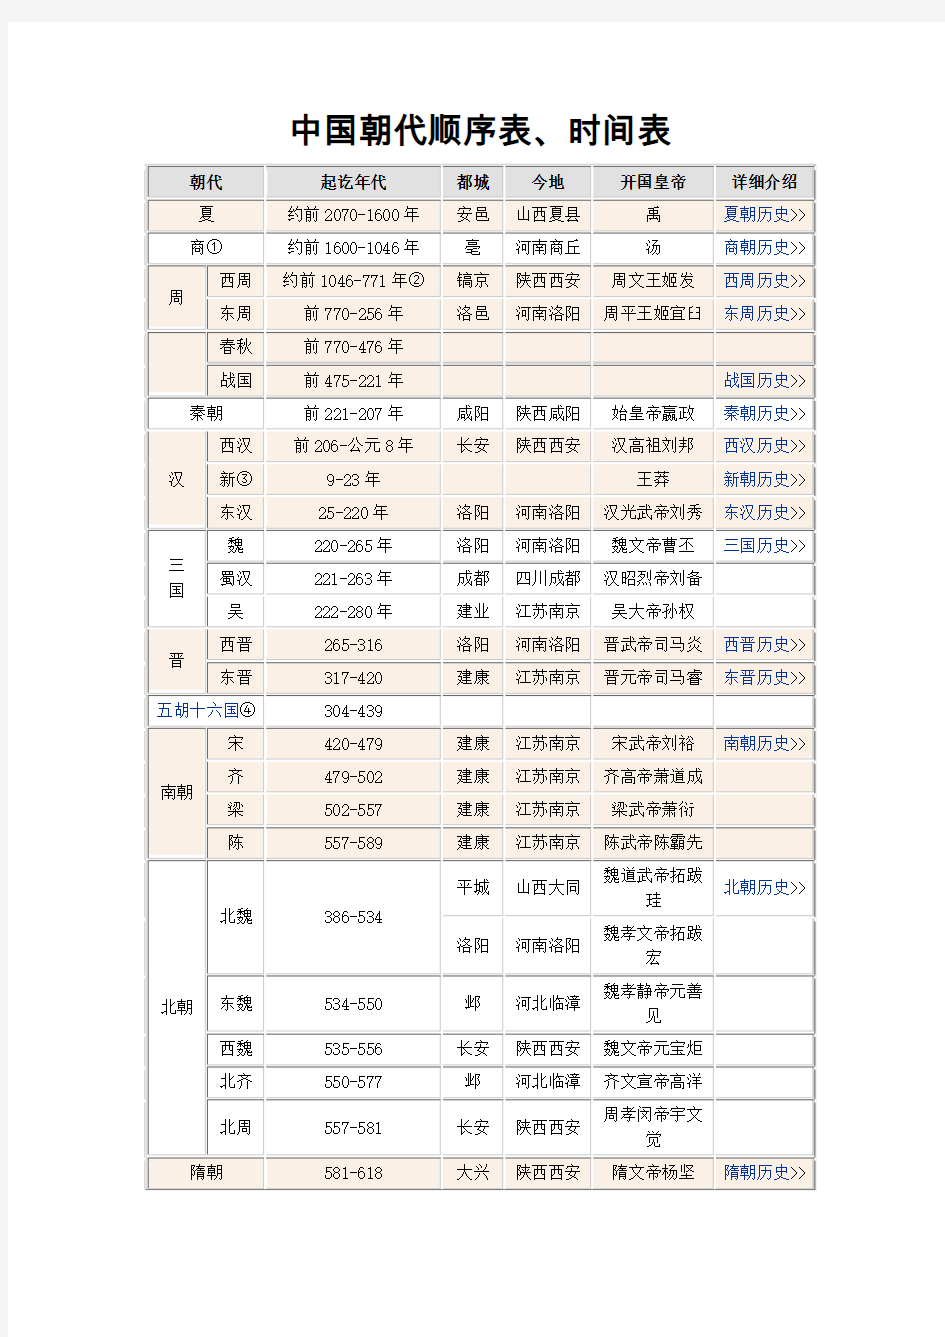 中国朝代顺序表